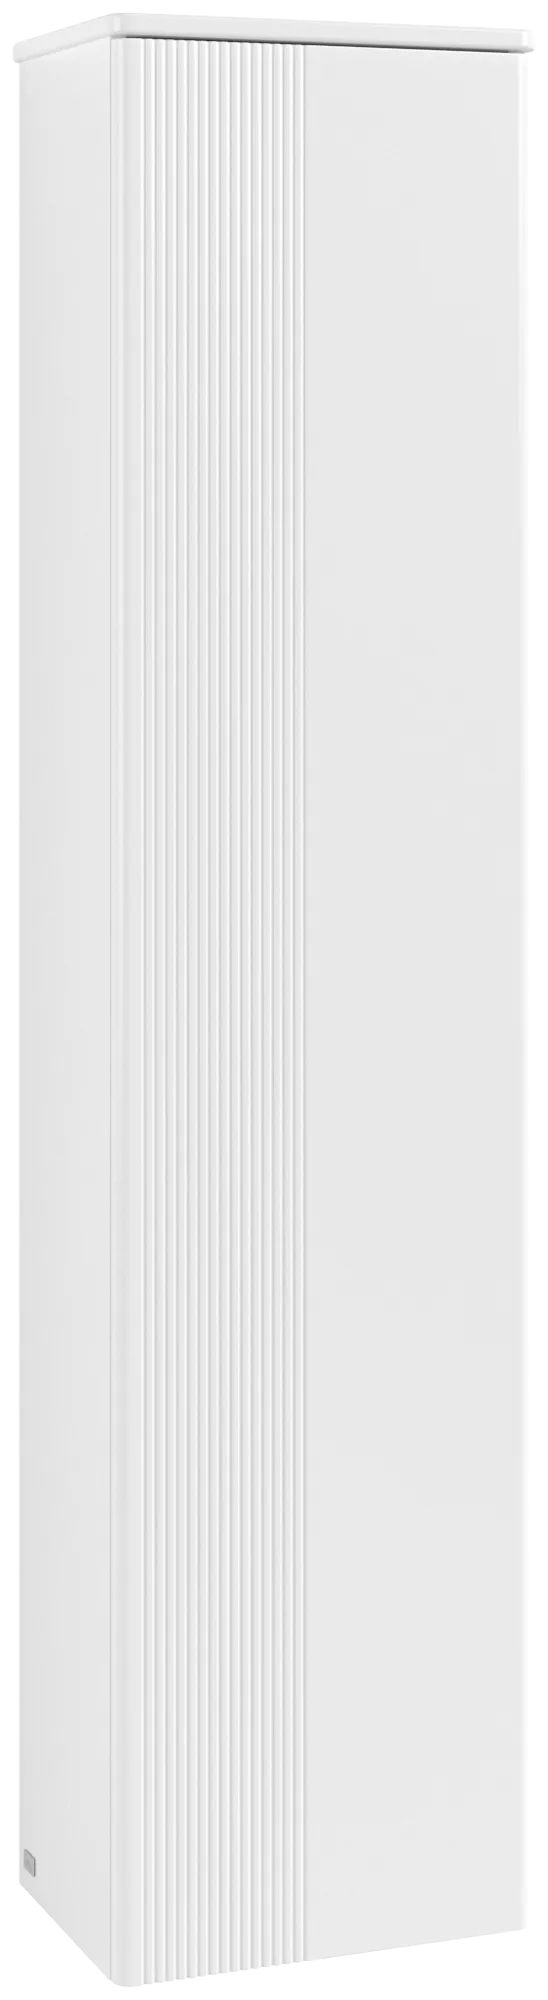 Bild von VILLEROY BOCH Antao Hochschrank, 1 Tür, 414 x 1719 x 287 mm, Front mit Struktur, White Matt Lacquer / White Matt Lacquer #K46100MT